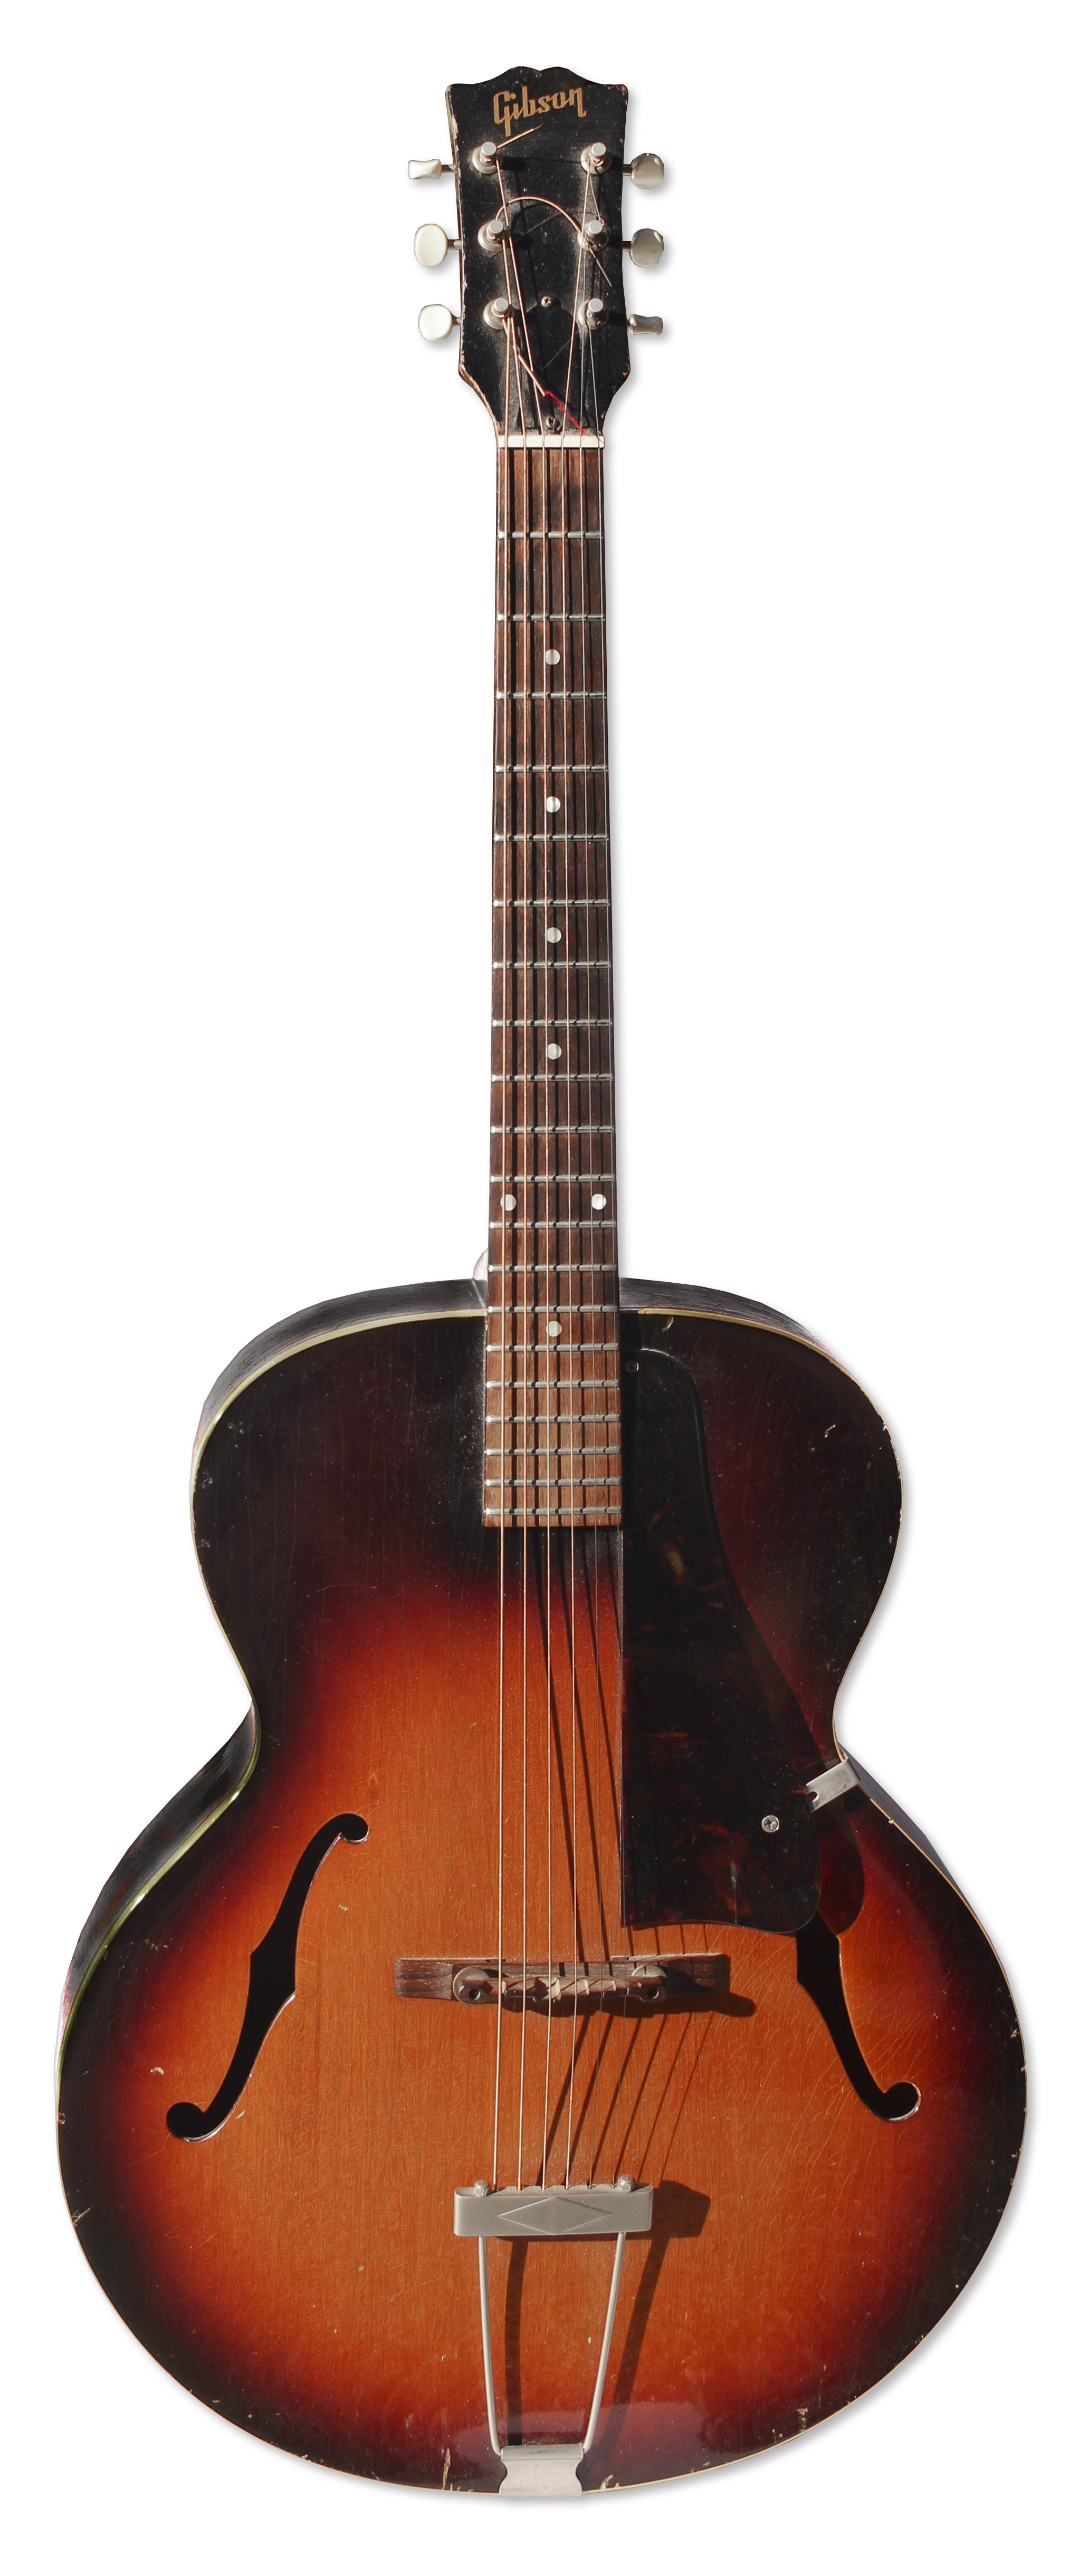 1959-es Gibson gitár<br /><br />Ezt a hat húros akusztikus L-szériás Gibson gitárt Prince korai időszakában dalai komponáláshoz és felvételeihez használta. Hosszú évekig ez volt a kedvenc hangszere, mely most hatvanezer dollárt ér. 